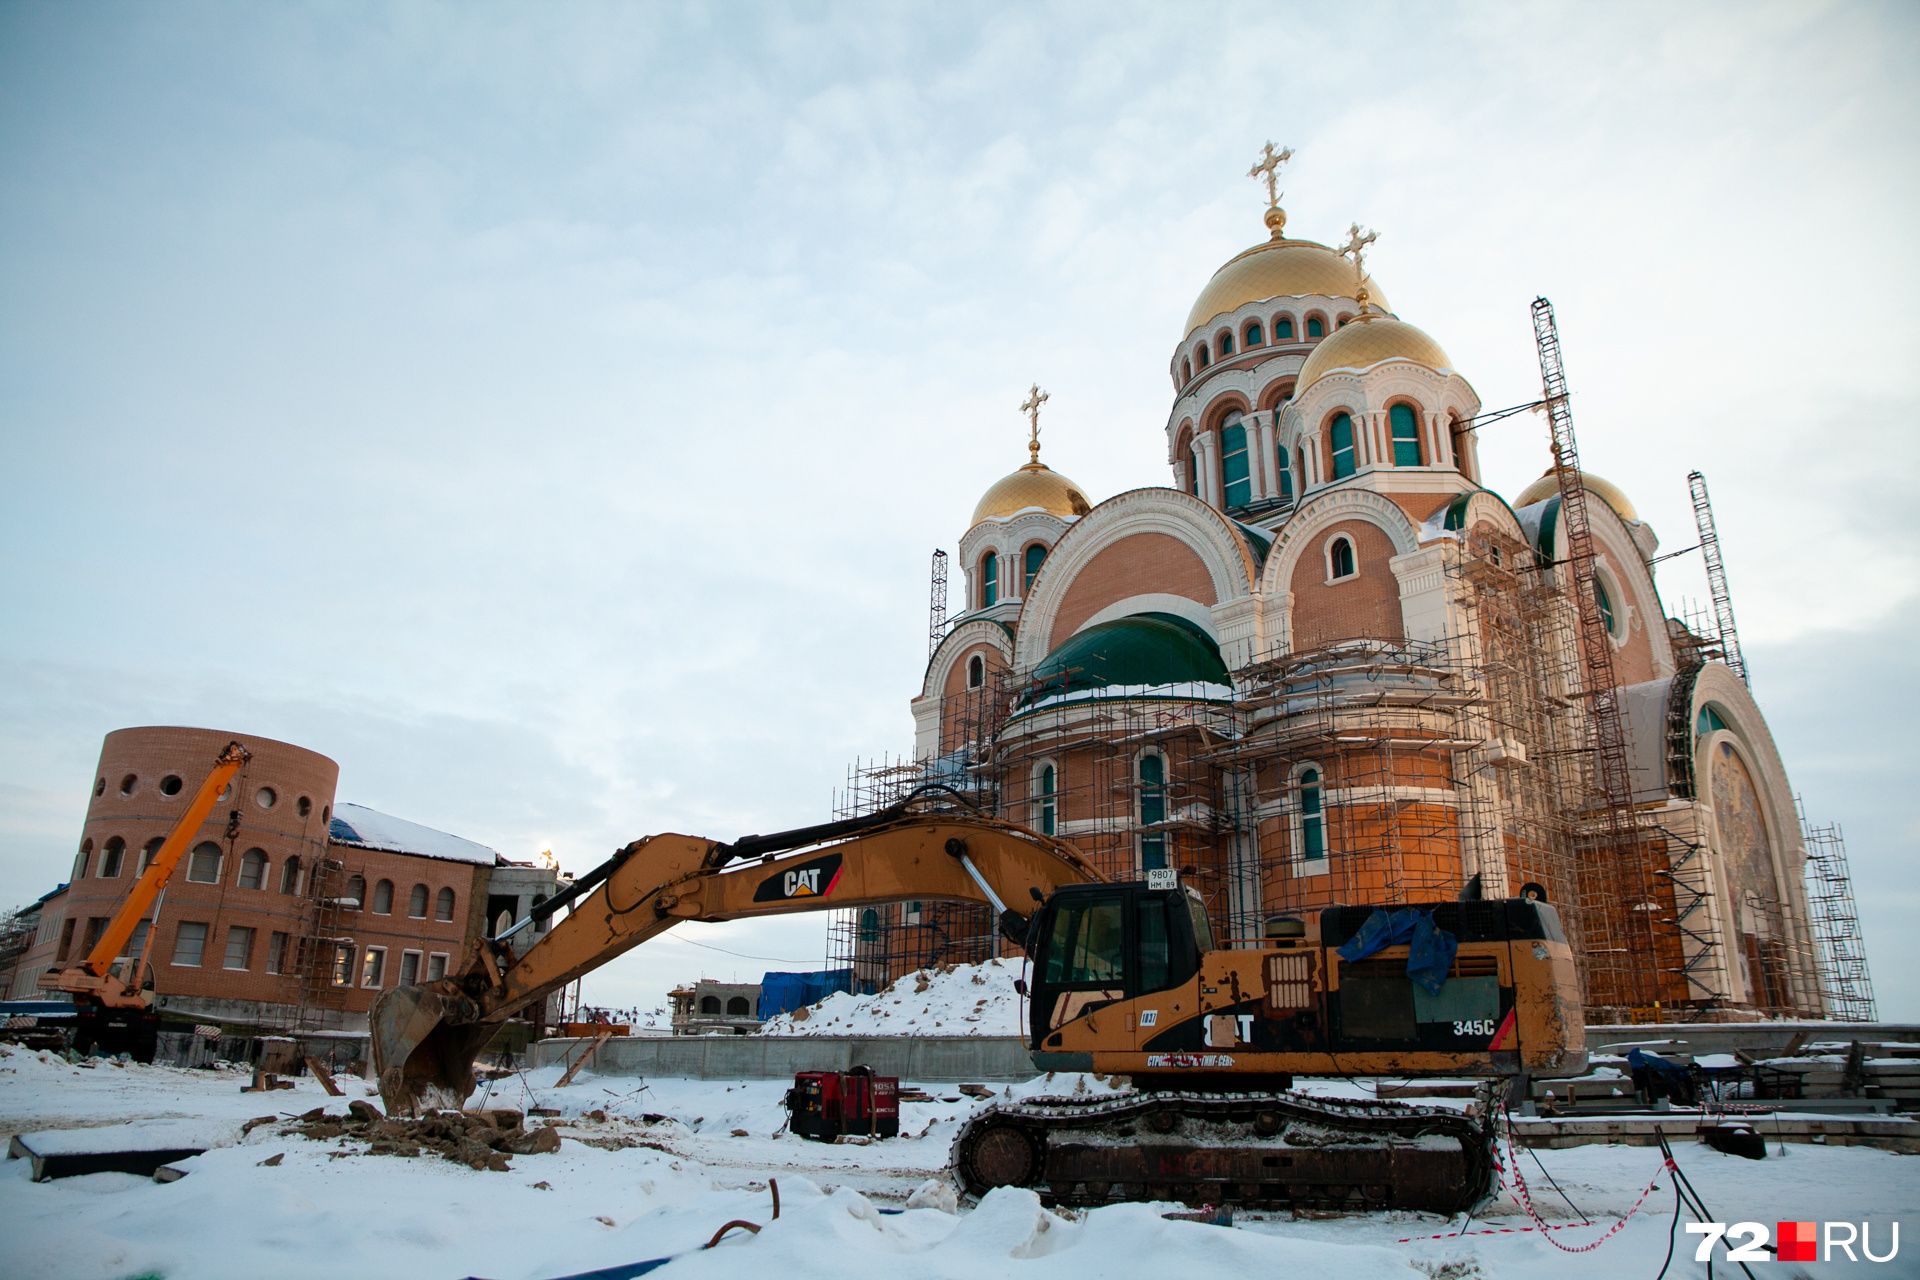 Место возведения храма в 2015 году посещал патриарх Кирилл. Тогда он пообещал, что лично освятит собор после окончания строительства